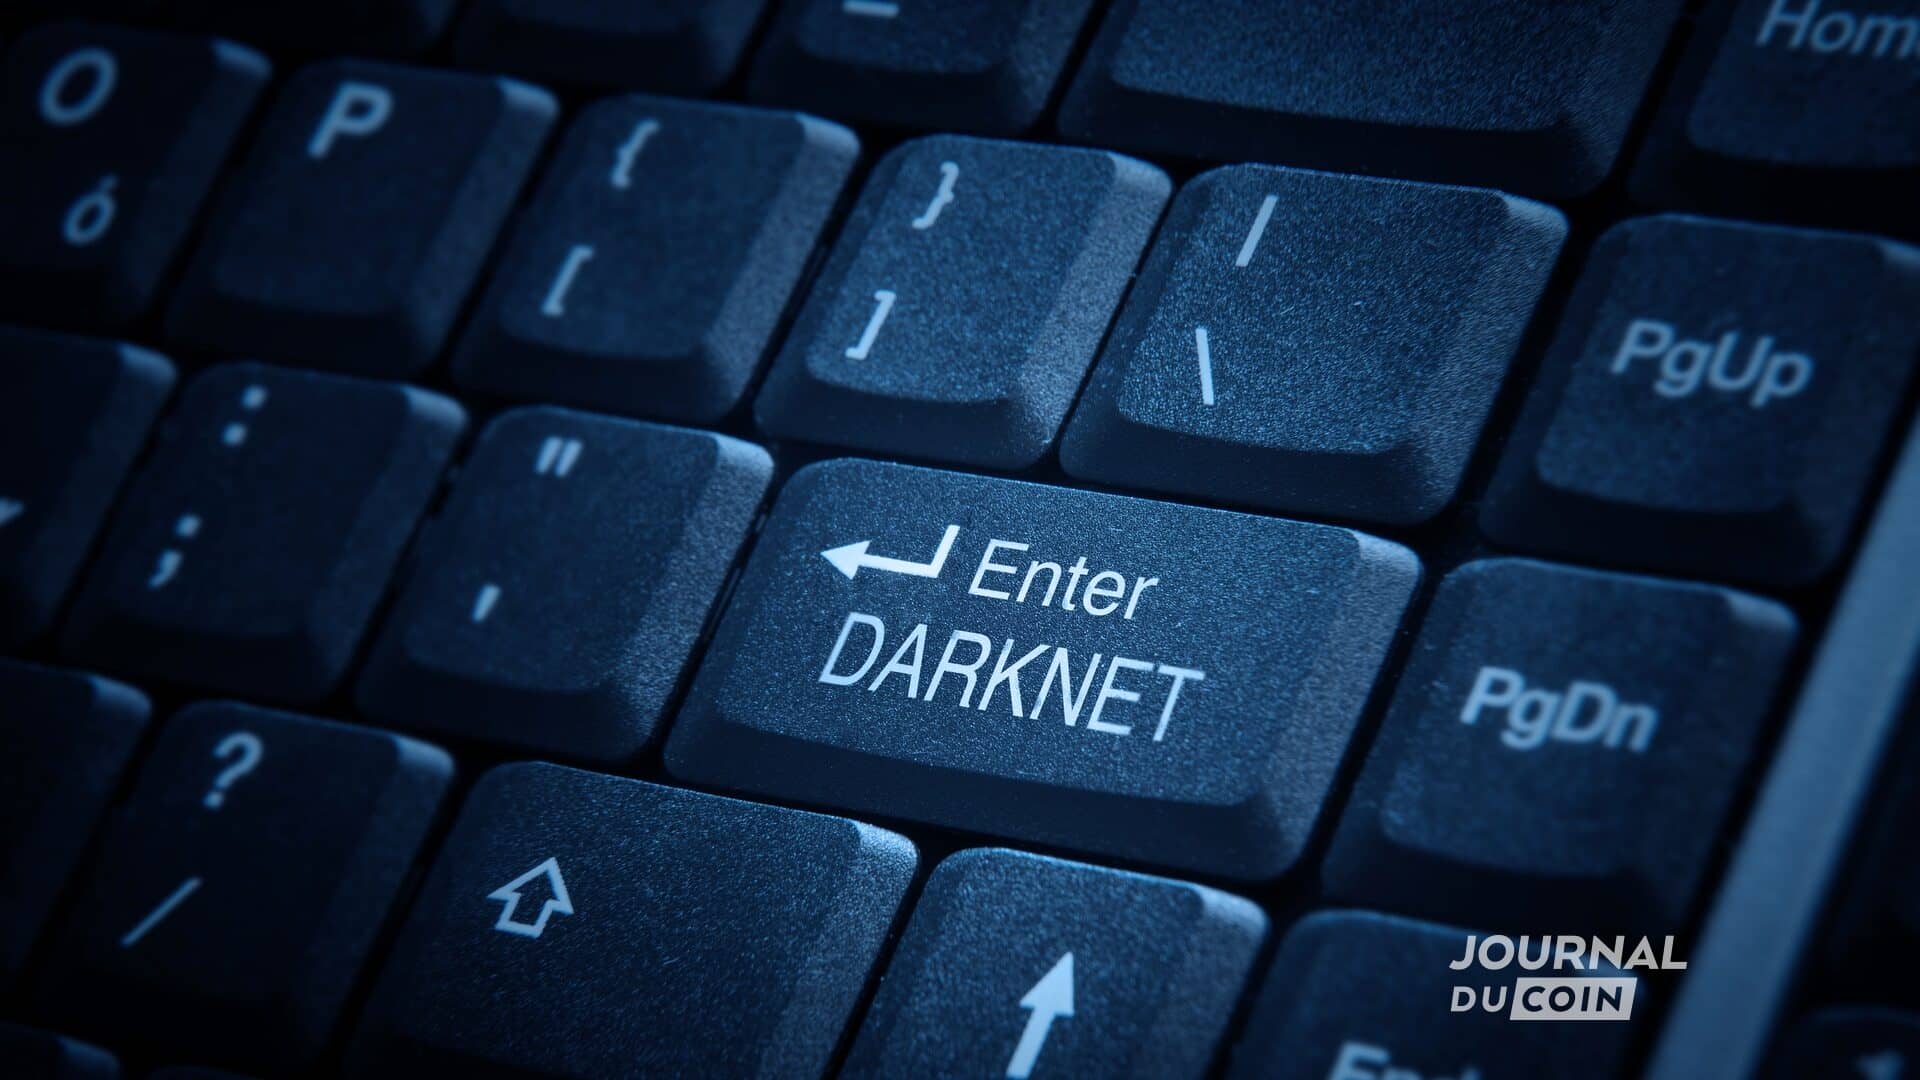 Darknet Dark Web